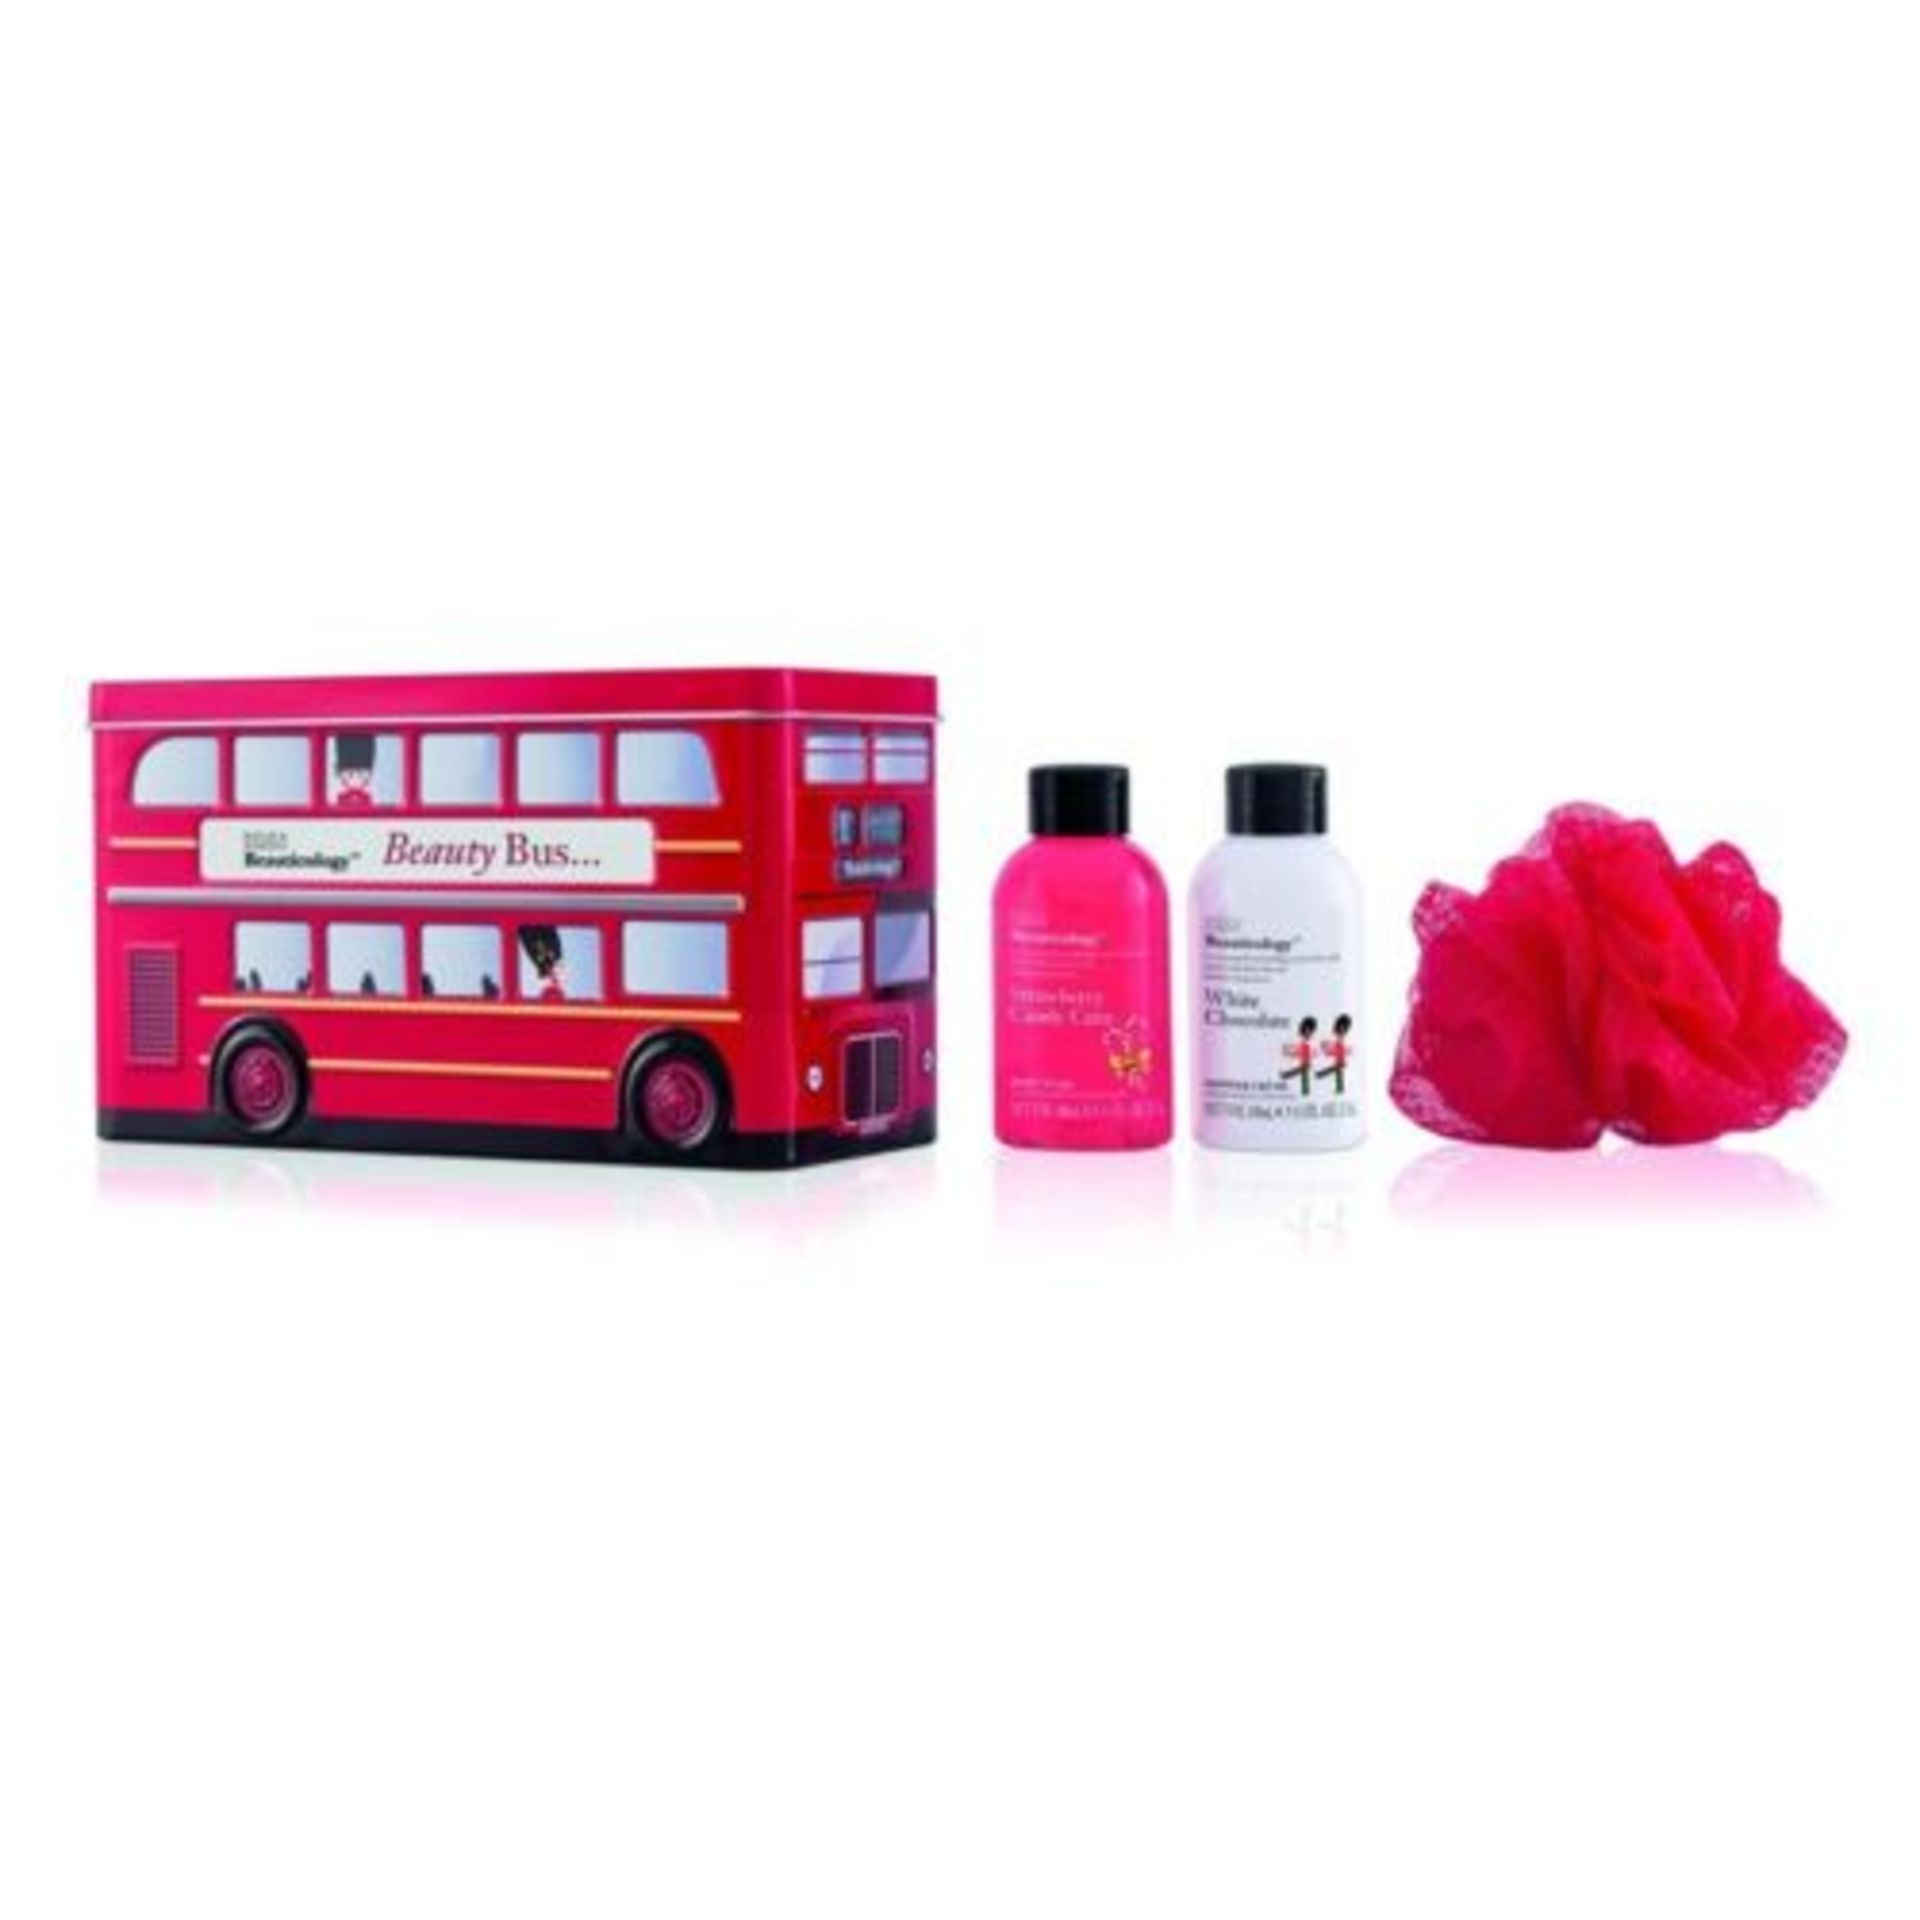 + VAT Brand New Baylis & Harding Beauticology Beauty Bus Tin Containing 1 x Strawberry Candy Cane